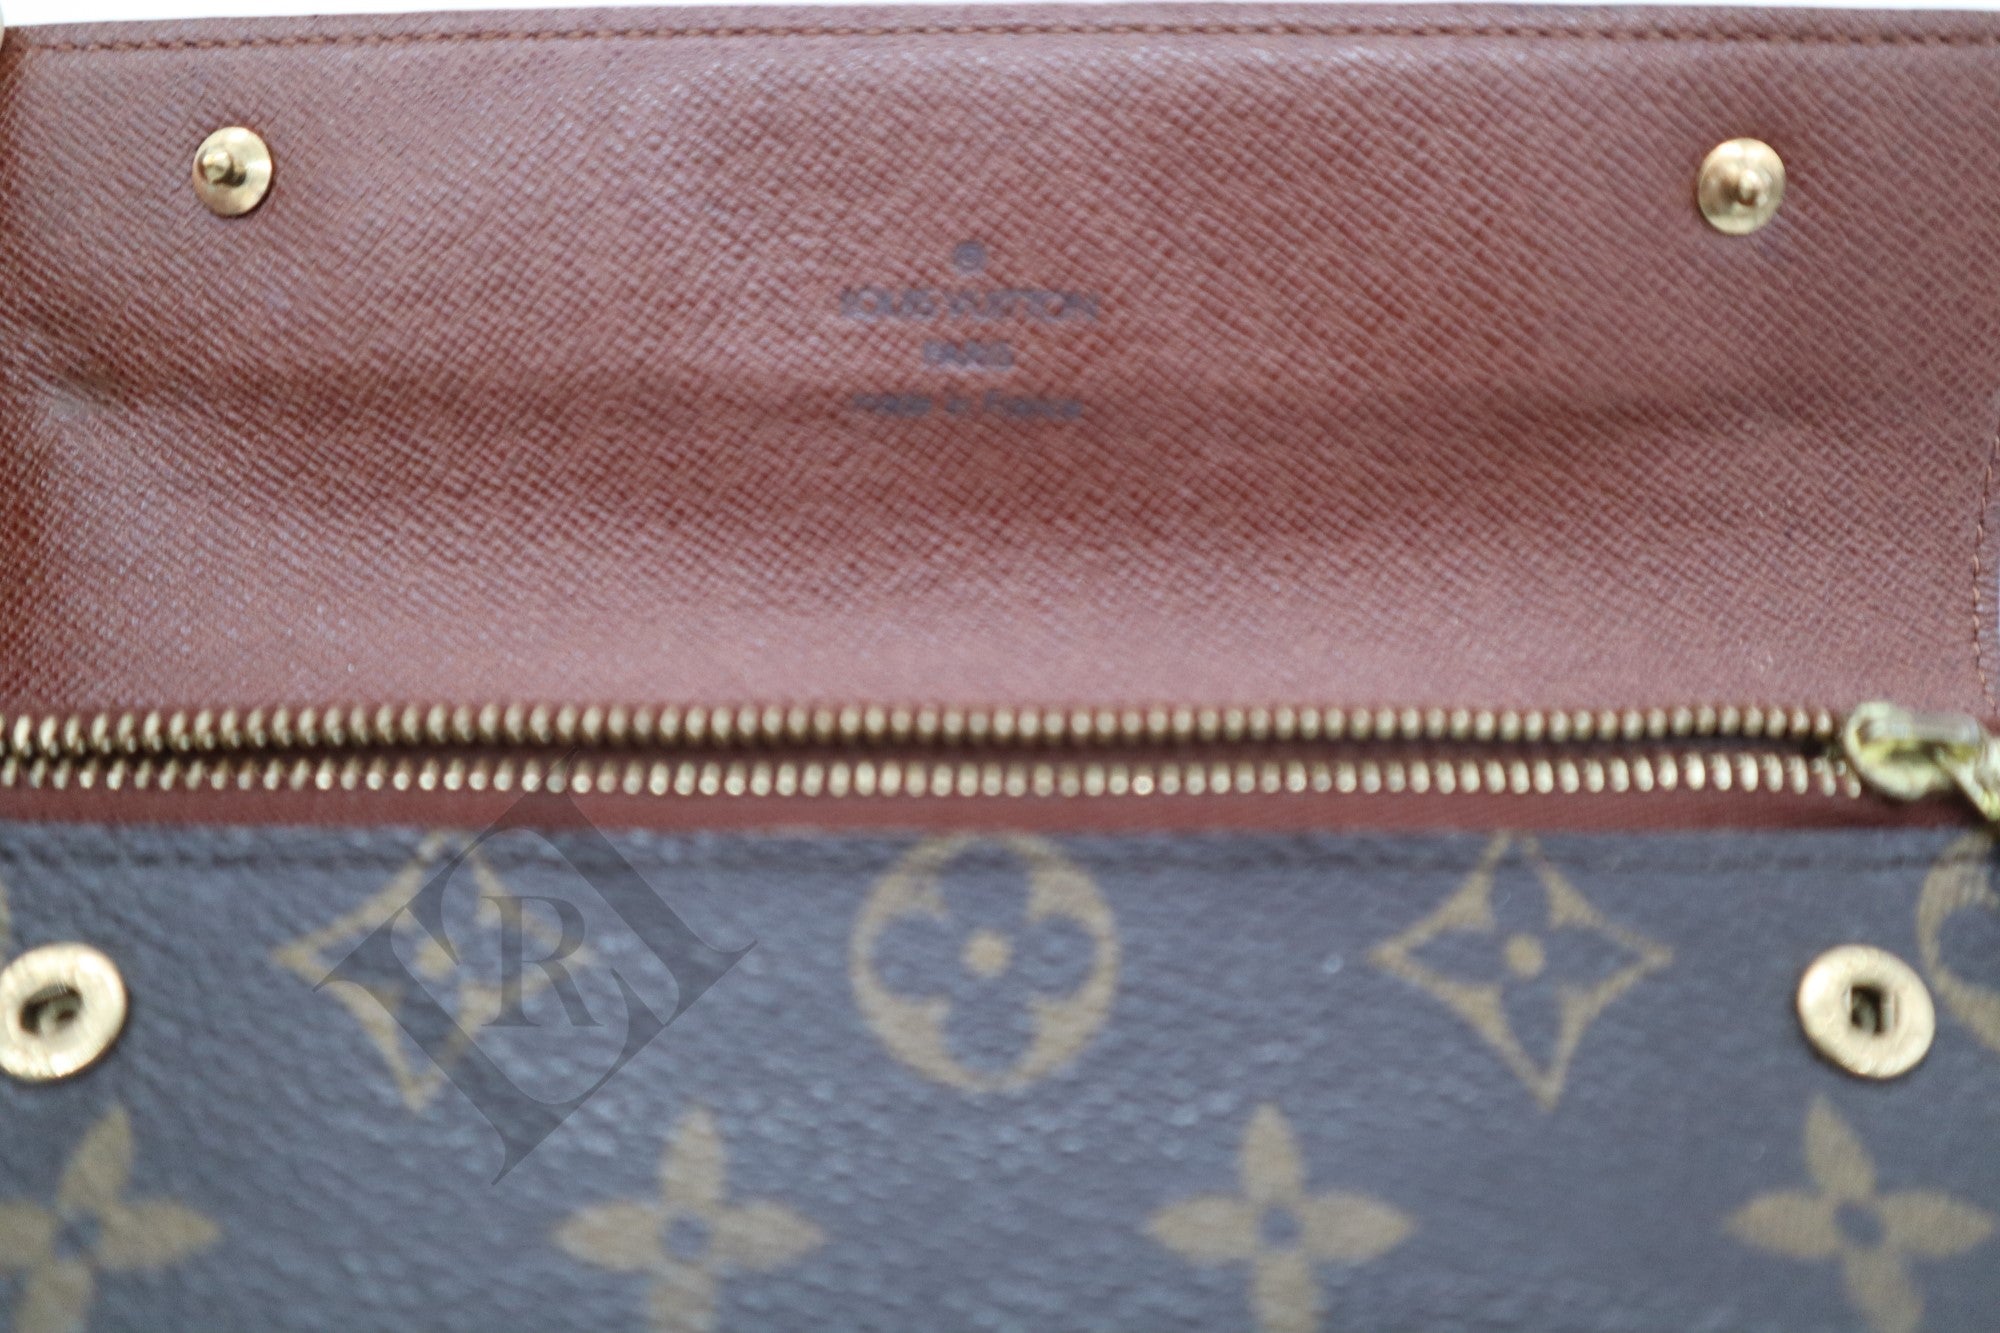 Louis Vuitton Monogram Accordion Wallet - Wallets, Accessories - LOU110514